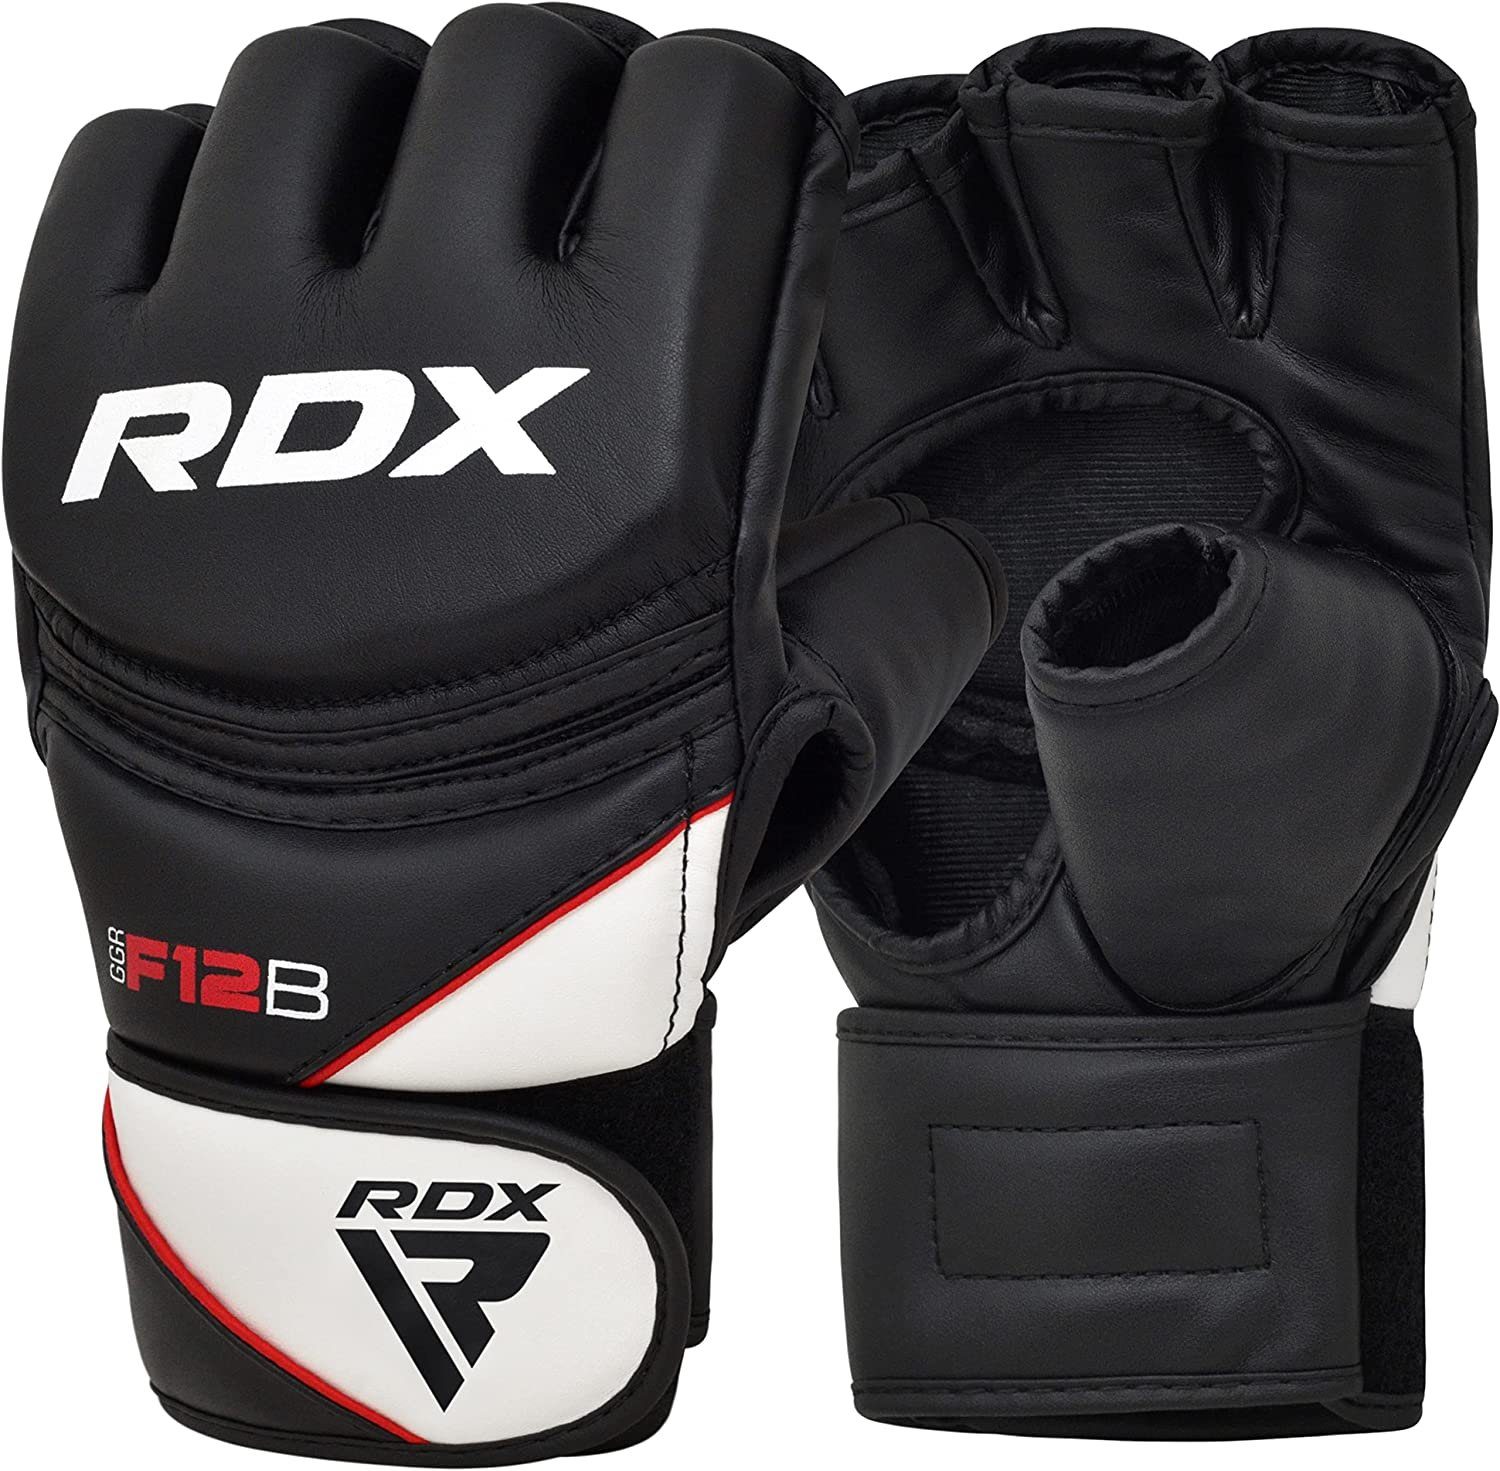 MMA Handschuhe, RDX Professionelle RDX Gloves Boxsack Sports Black Kampfsport MMA-Handschuhe MMA